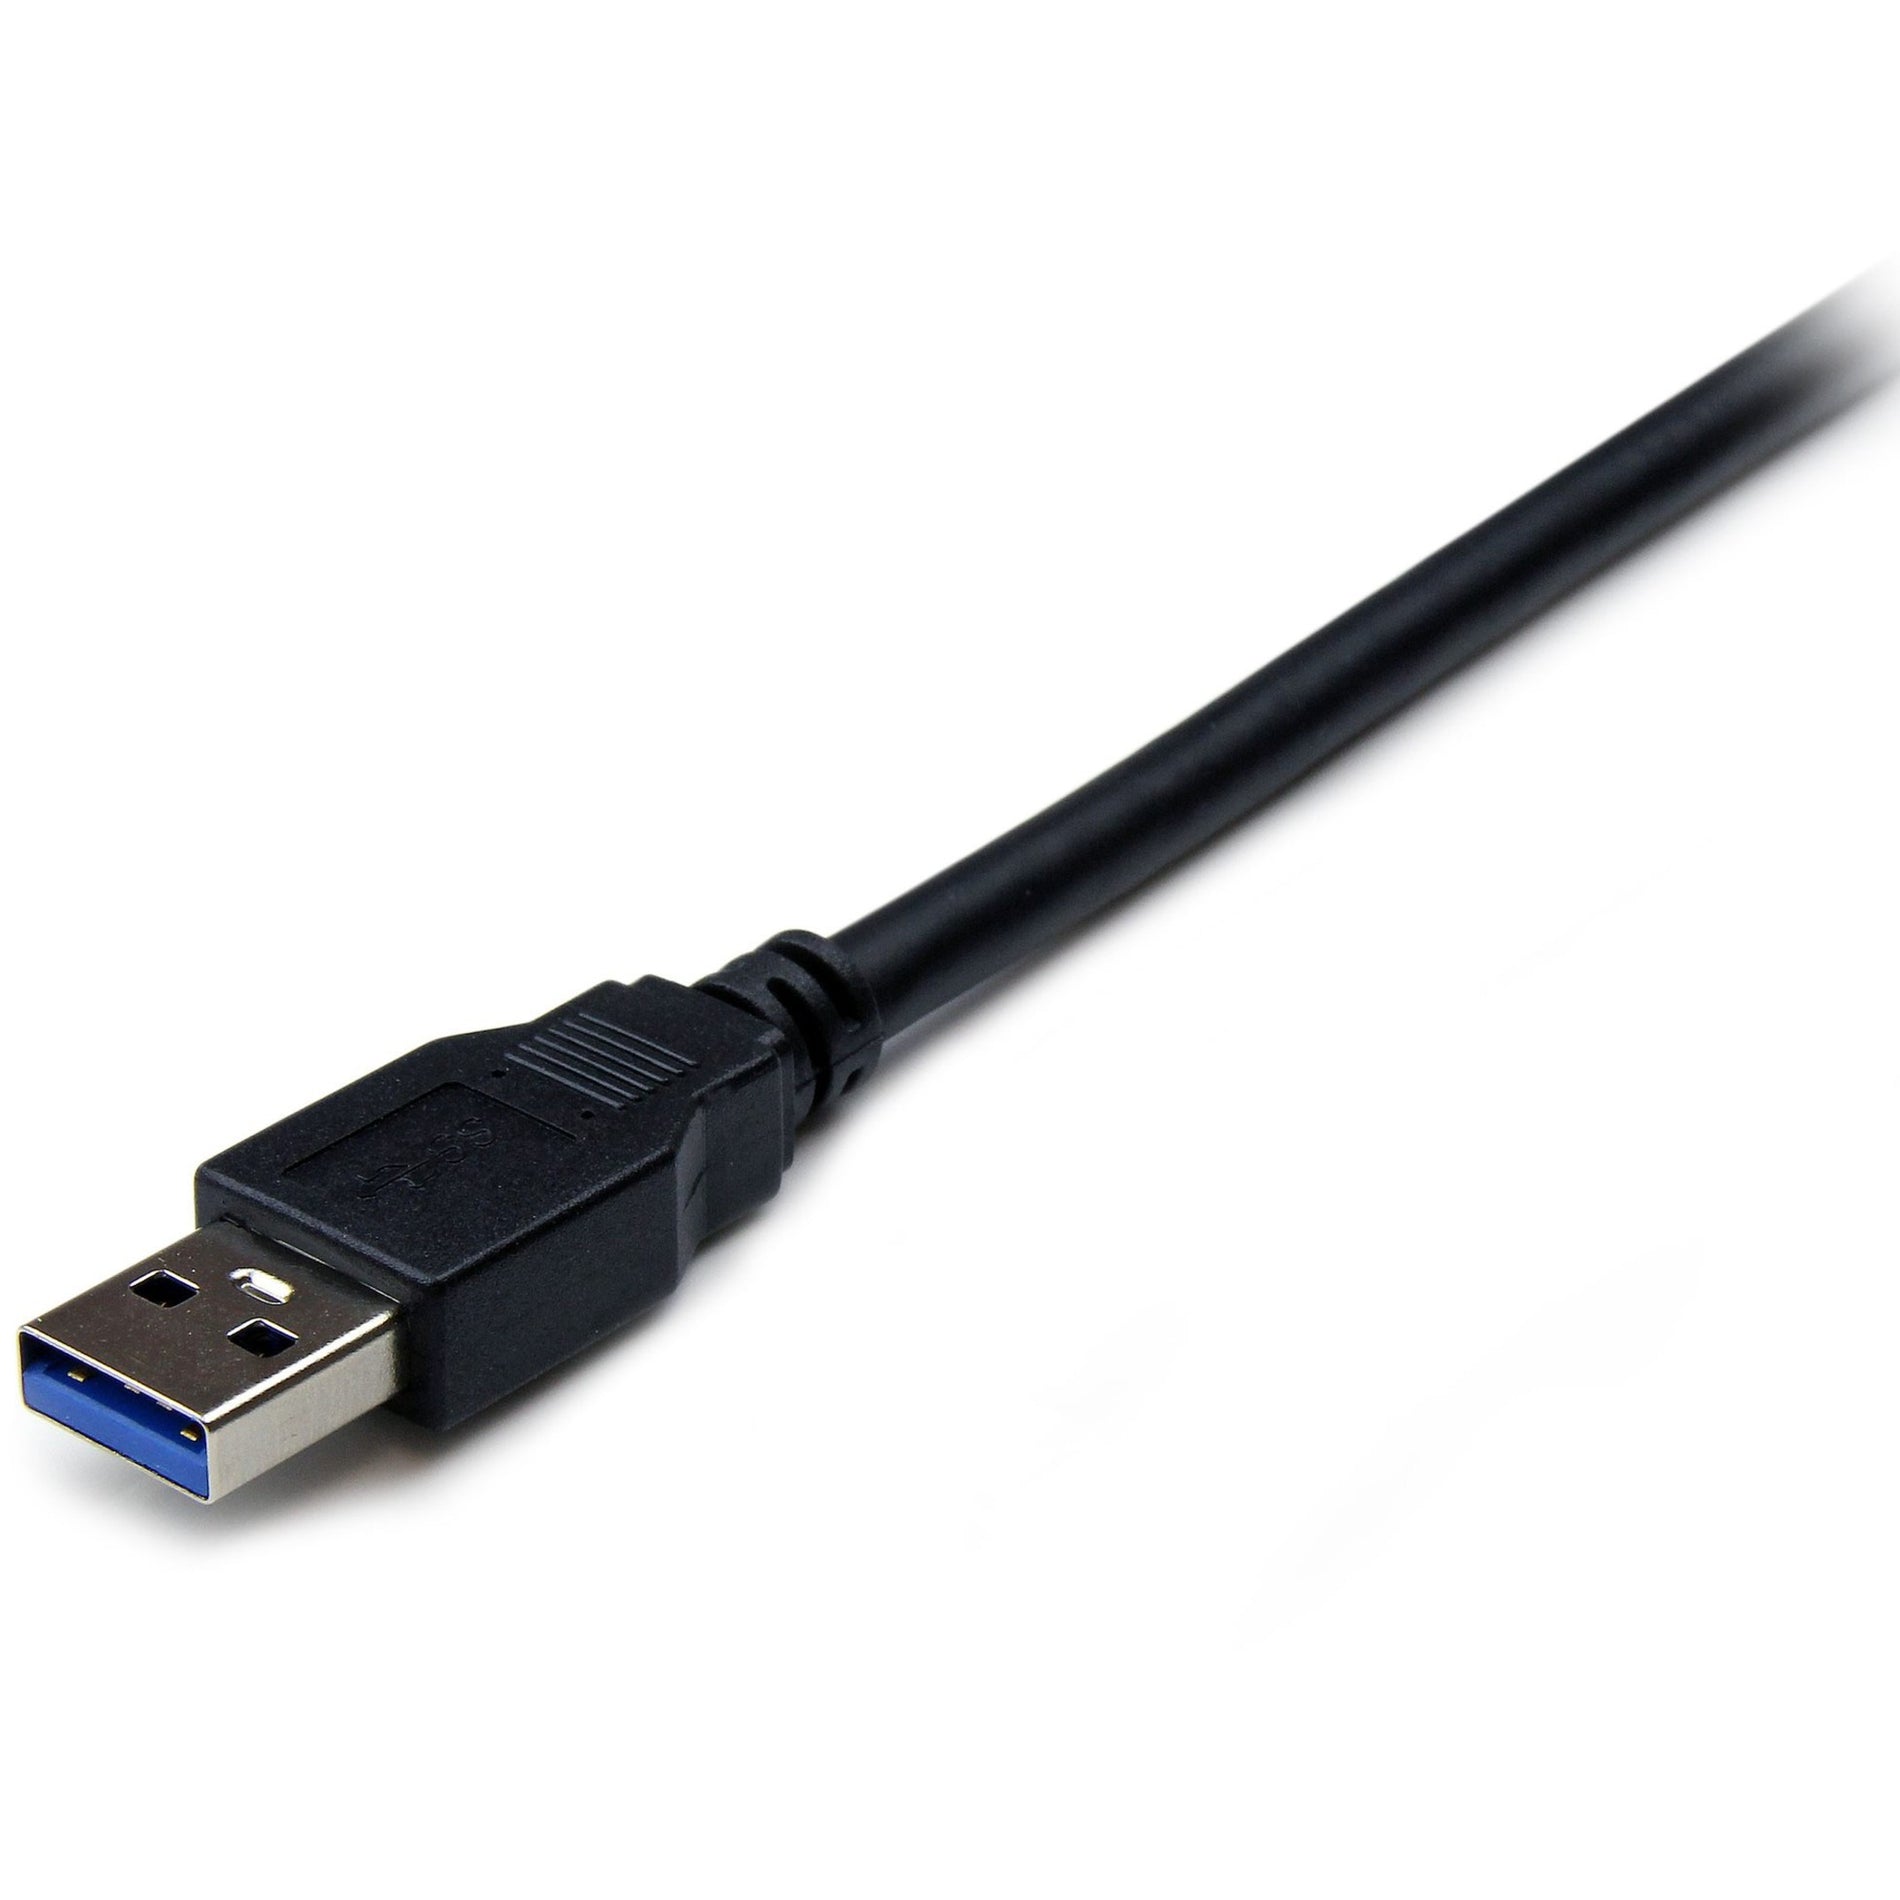 品牌名：StarTech.com 6 英尺 黑色 超高速 USB 3.0 延长线 A to A - M/F，高速数据传输，终身保修